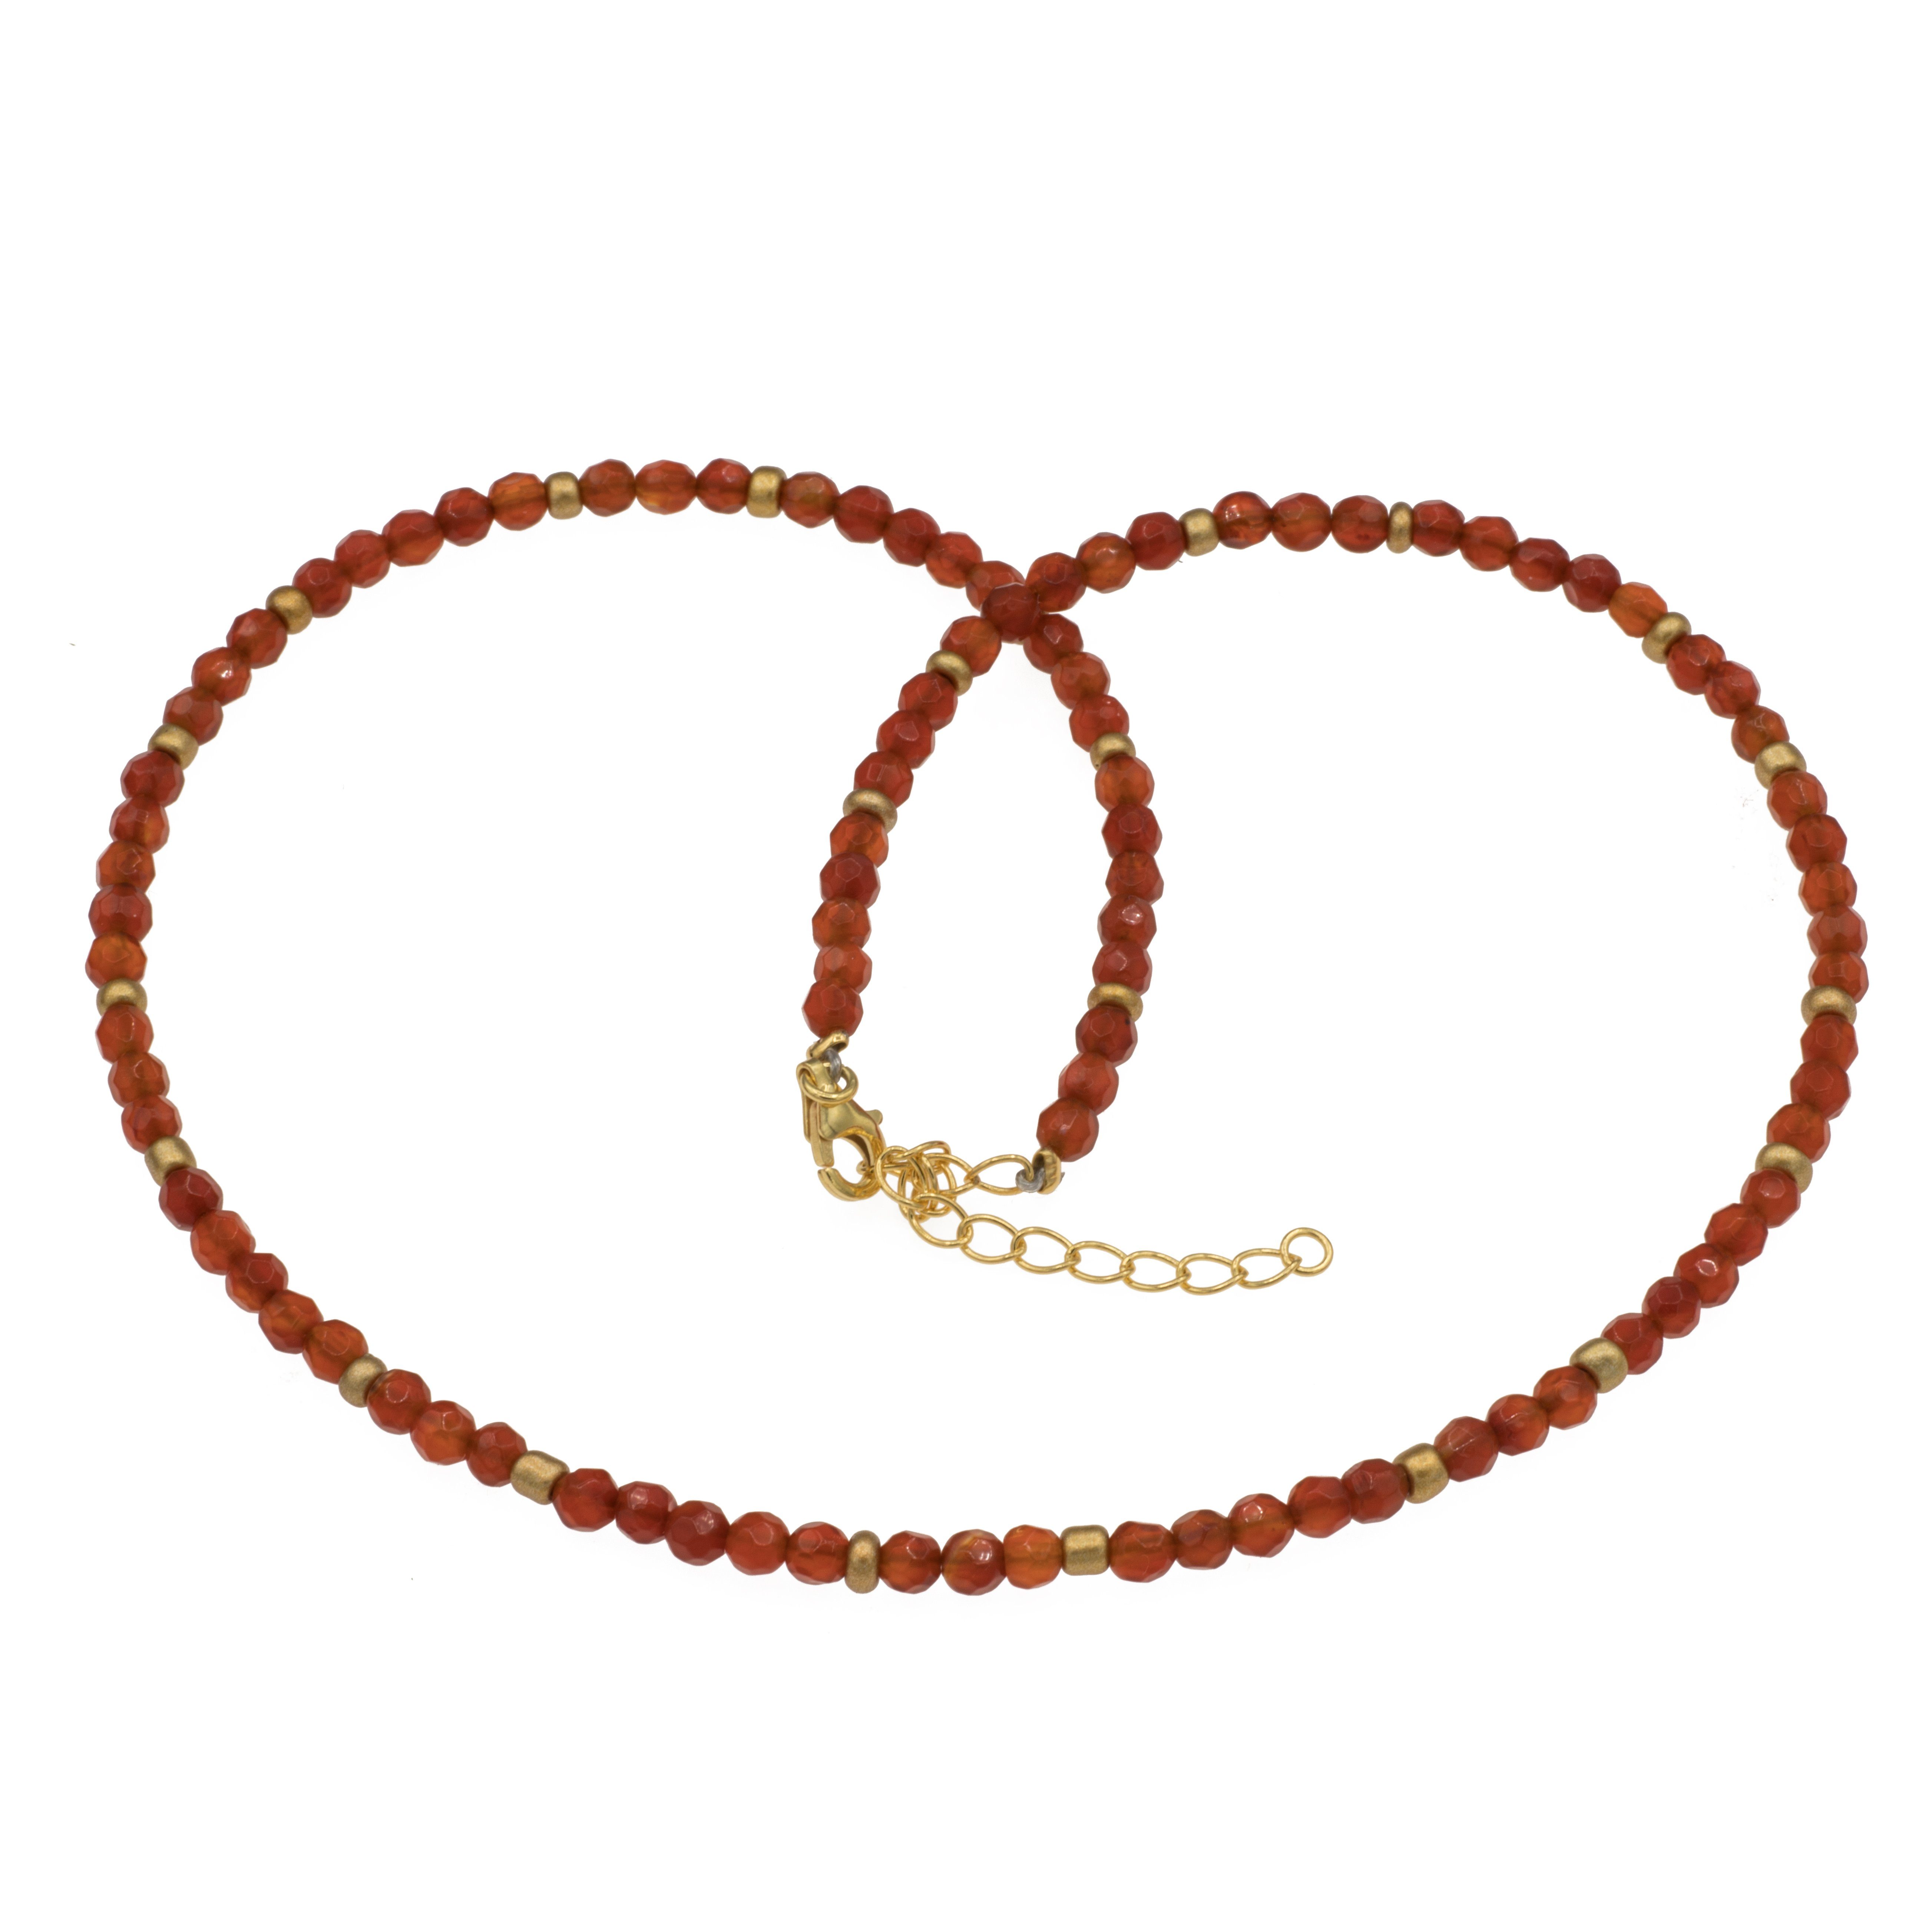 Bella Carina Perlenkette Kette mit 4 mm Karneol facettiert und kleinen Glasperlen 42 - 47 cm, mit 4 mm Karneol Perlen facettiert